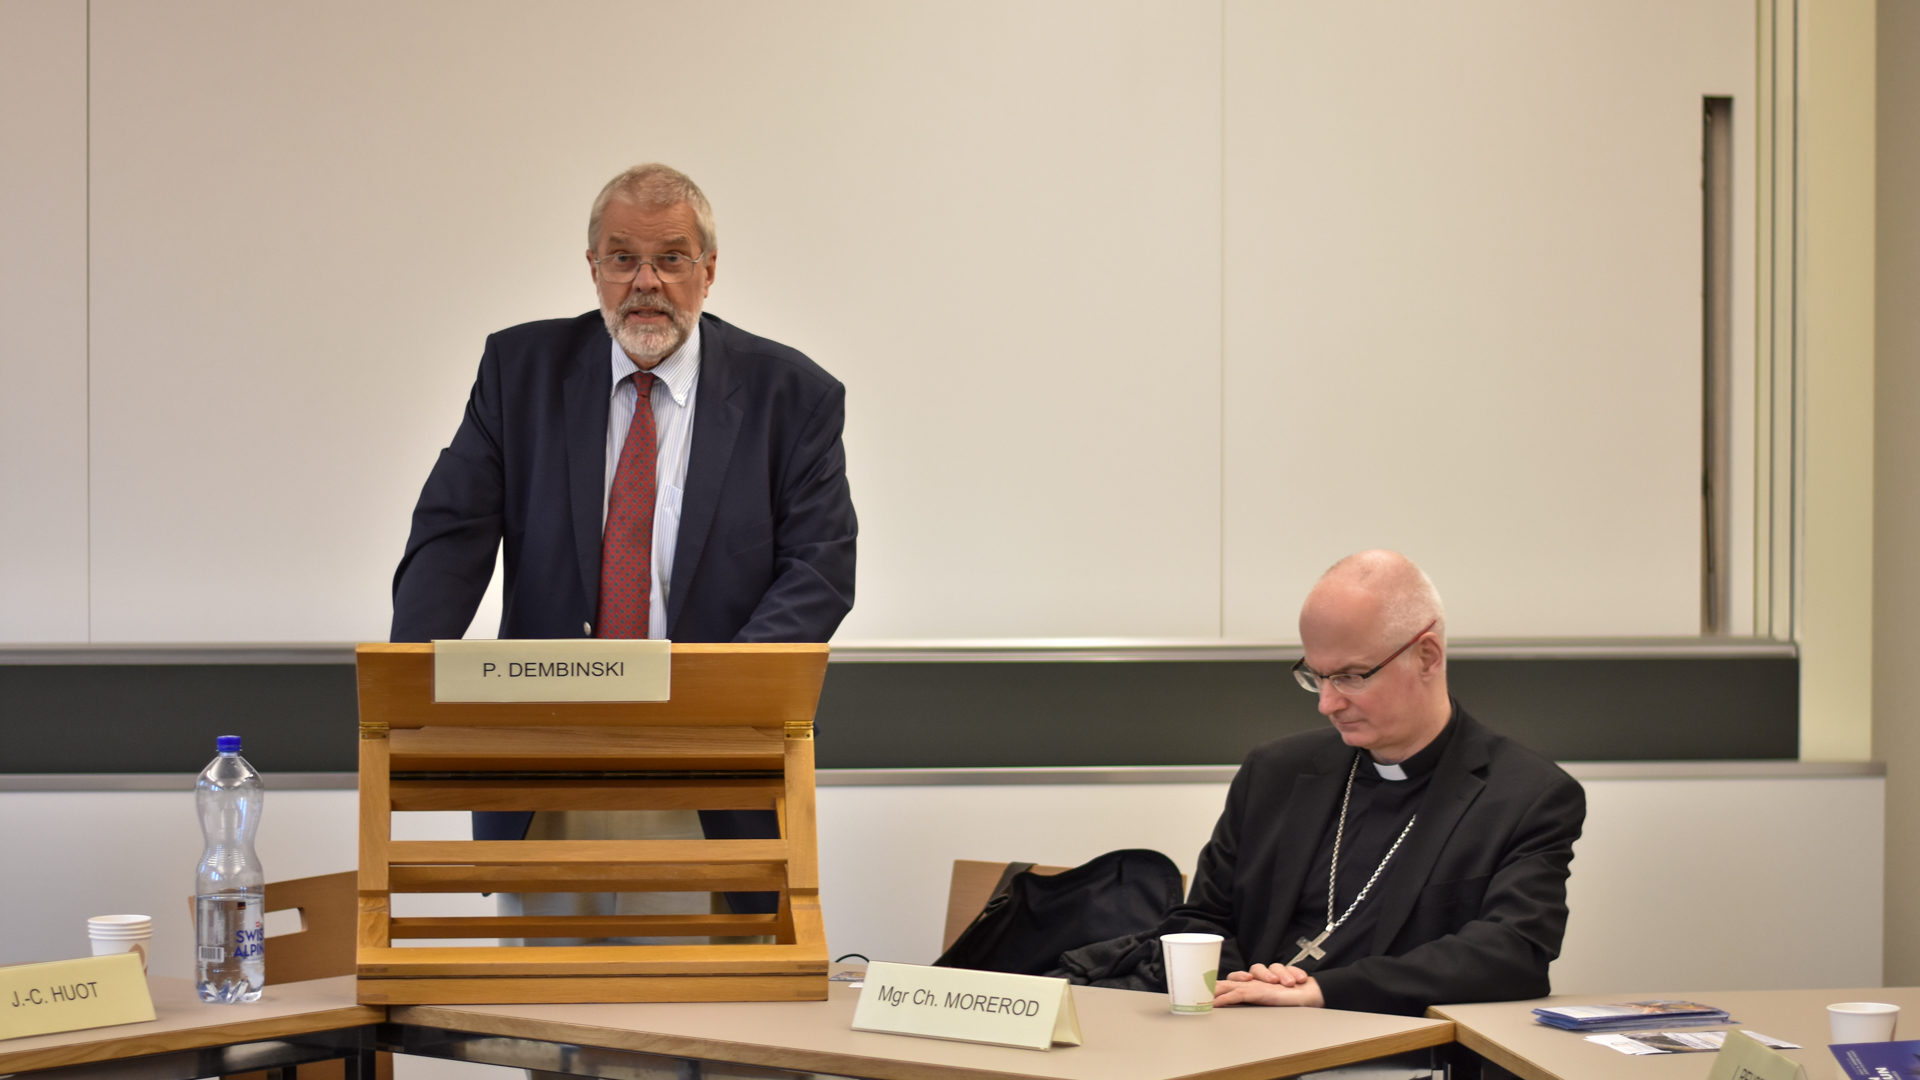 Le professeur Paul Dembinski (à gauche), président de la plateforme "Dignité et développement" et Mgr Charles Morerod,
 évêque de Lausanne,
 Genève et Fribourg (Photo: Pierre Pistoletti)